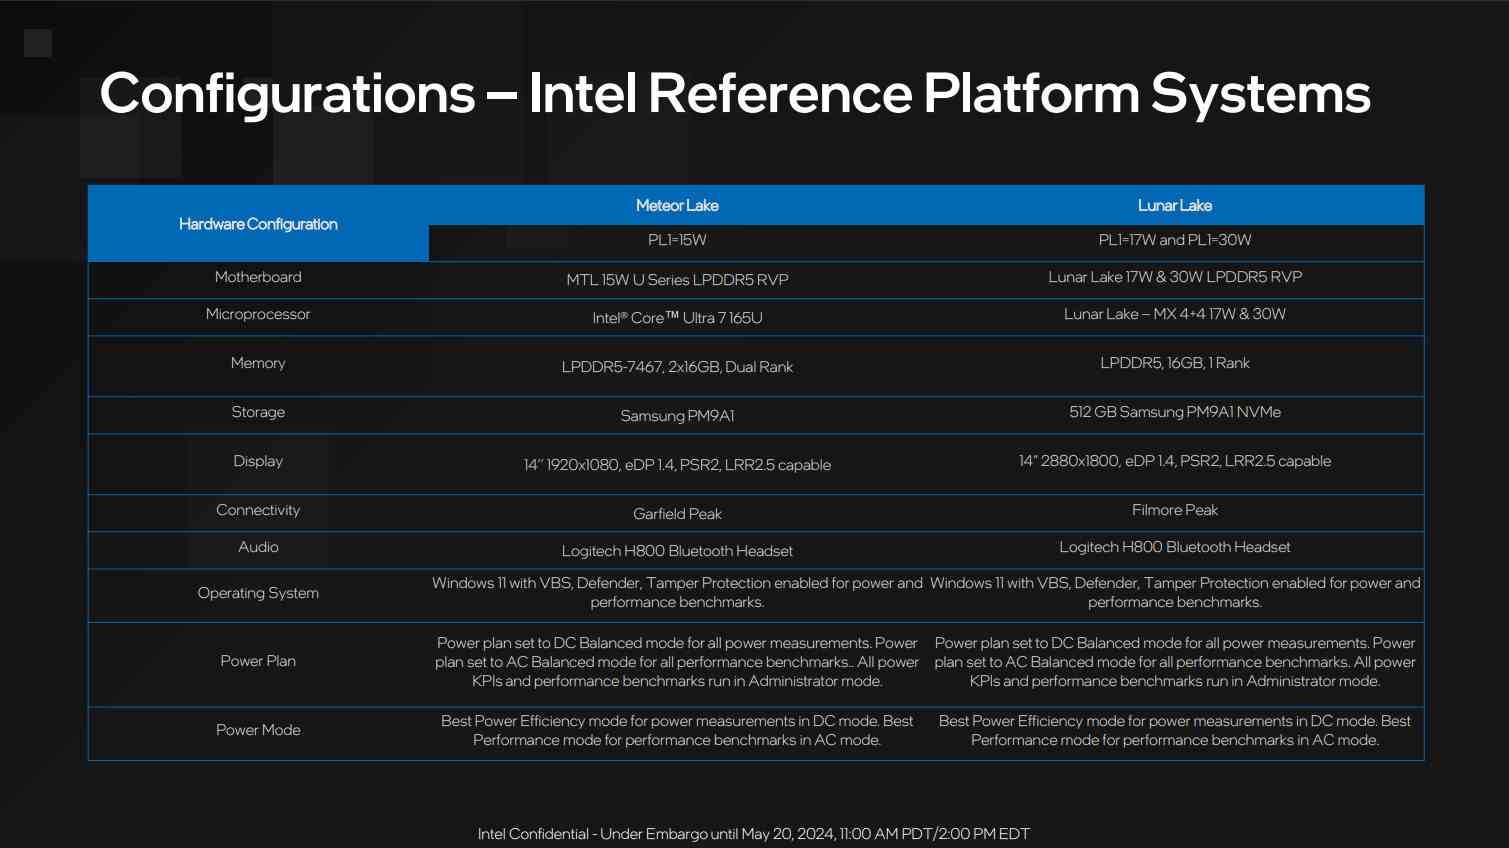 Basın için Intel Lunar Lake önizleme özeti